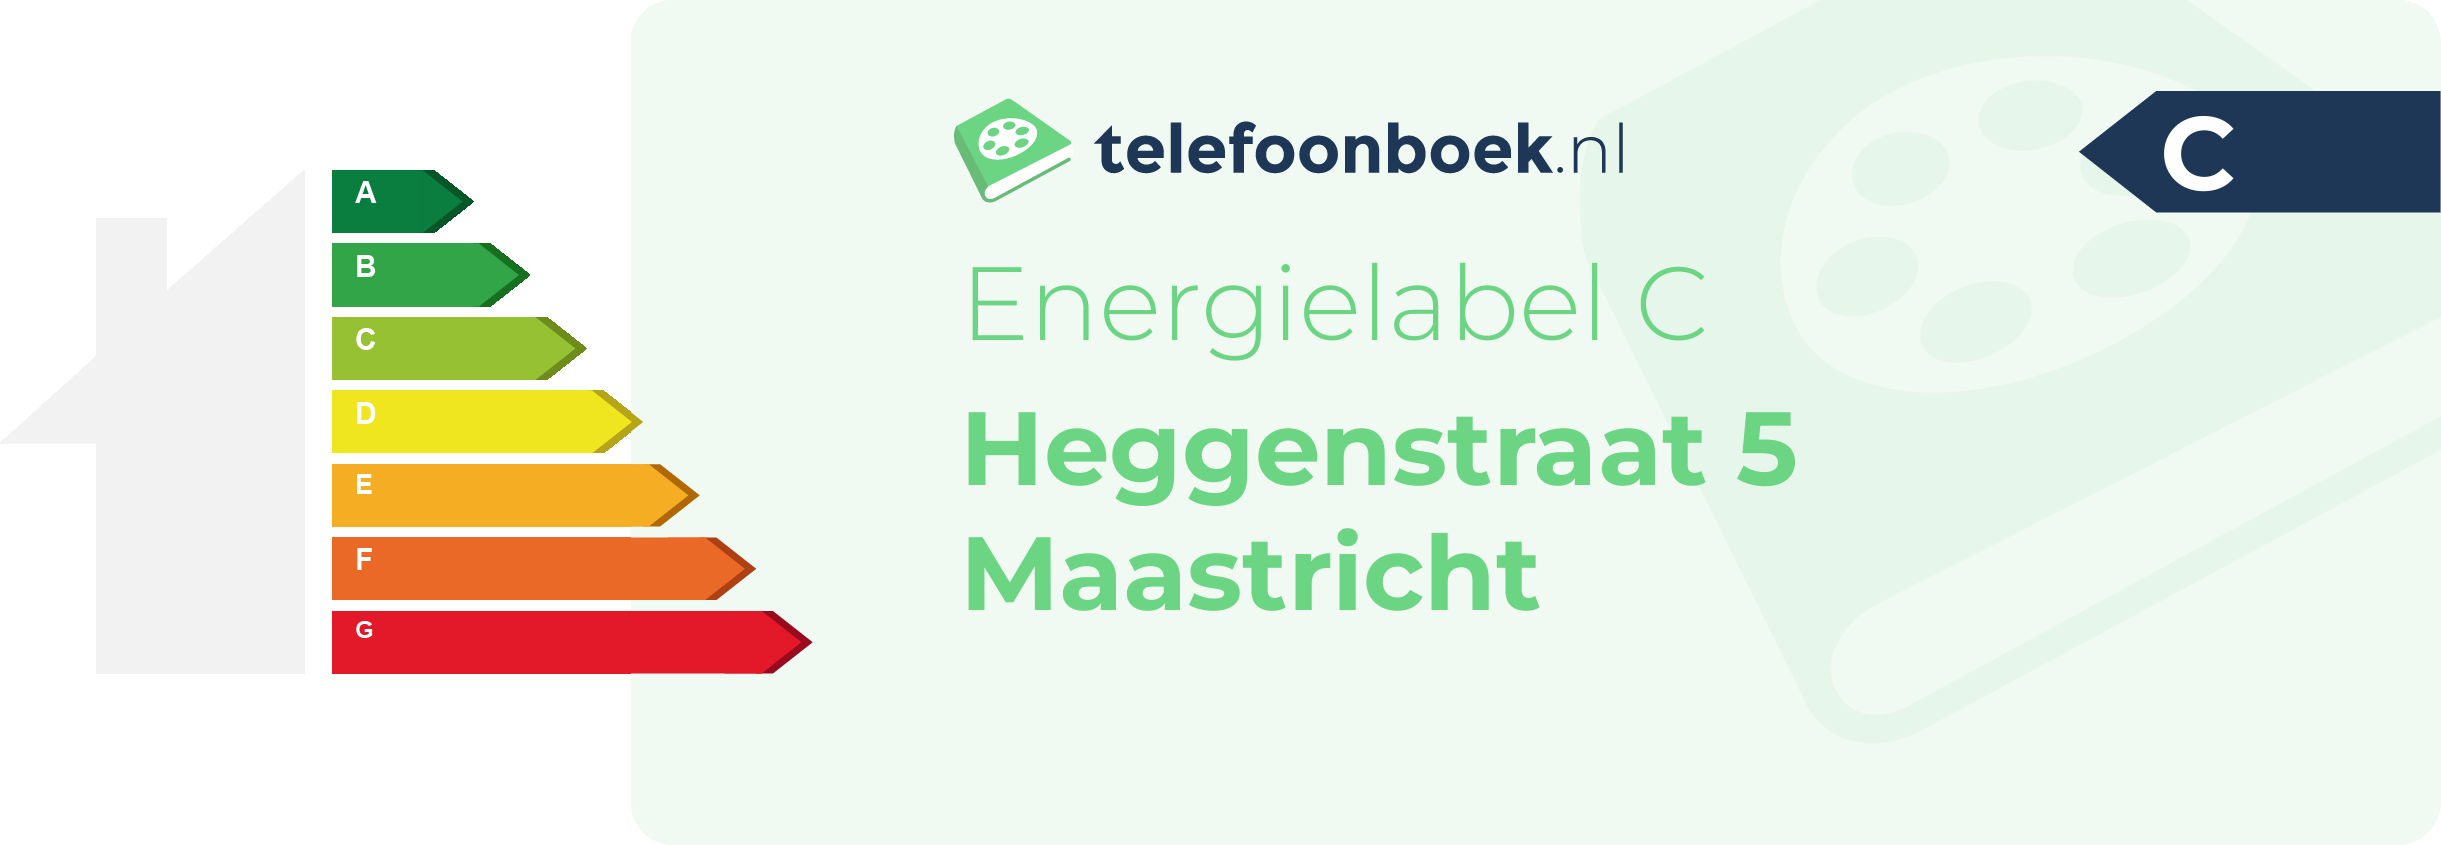 Energielabel Heggenstraat 5 Maastricht